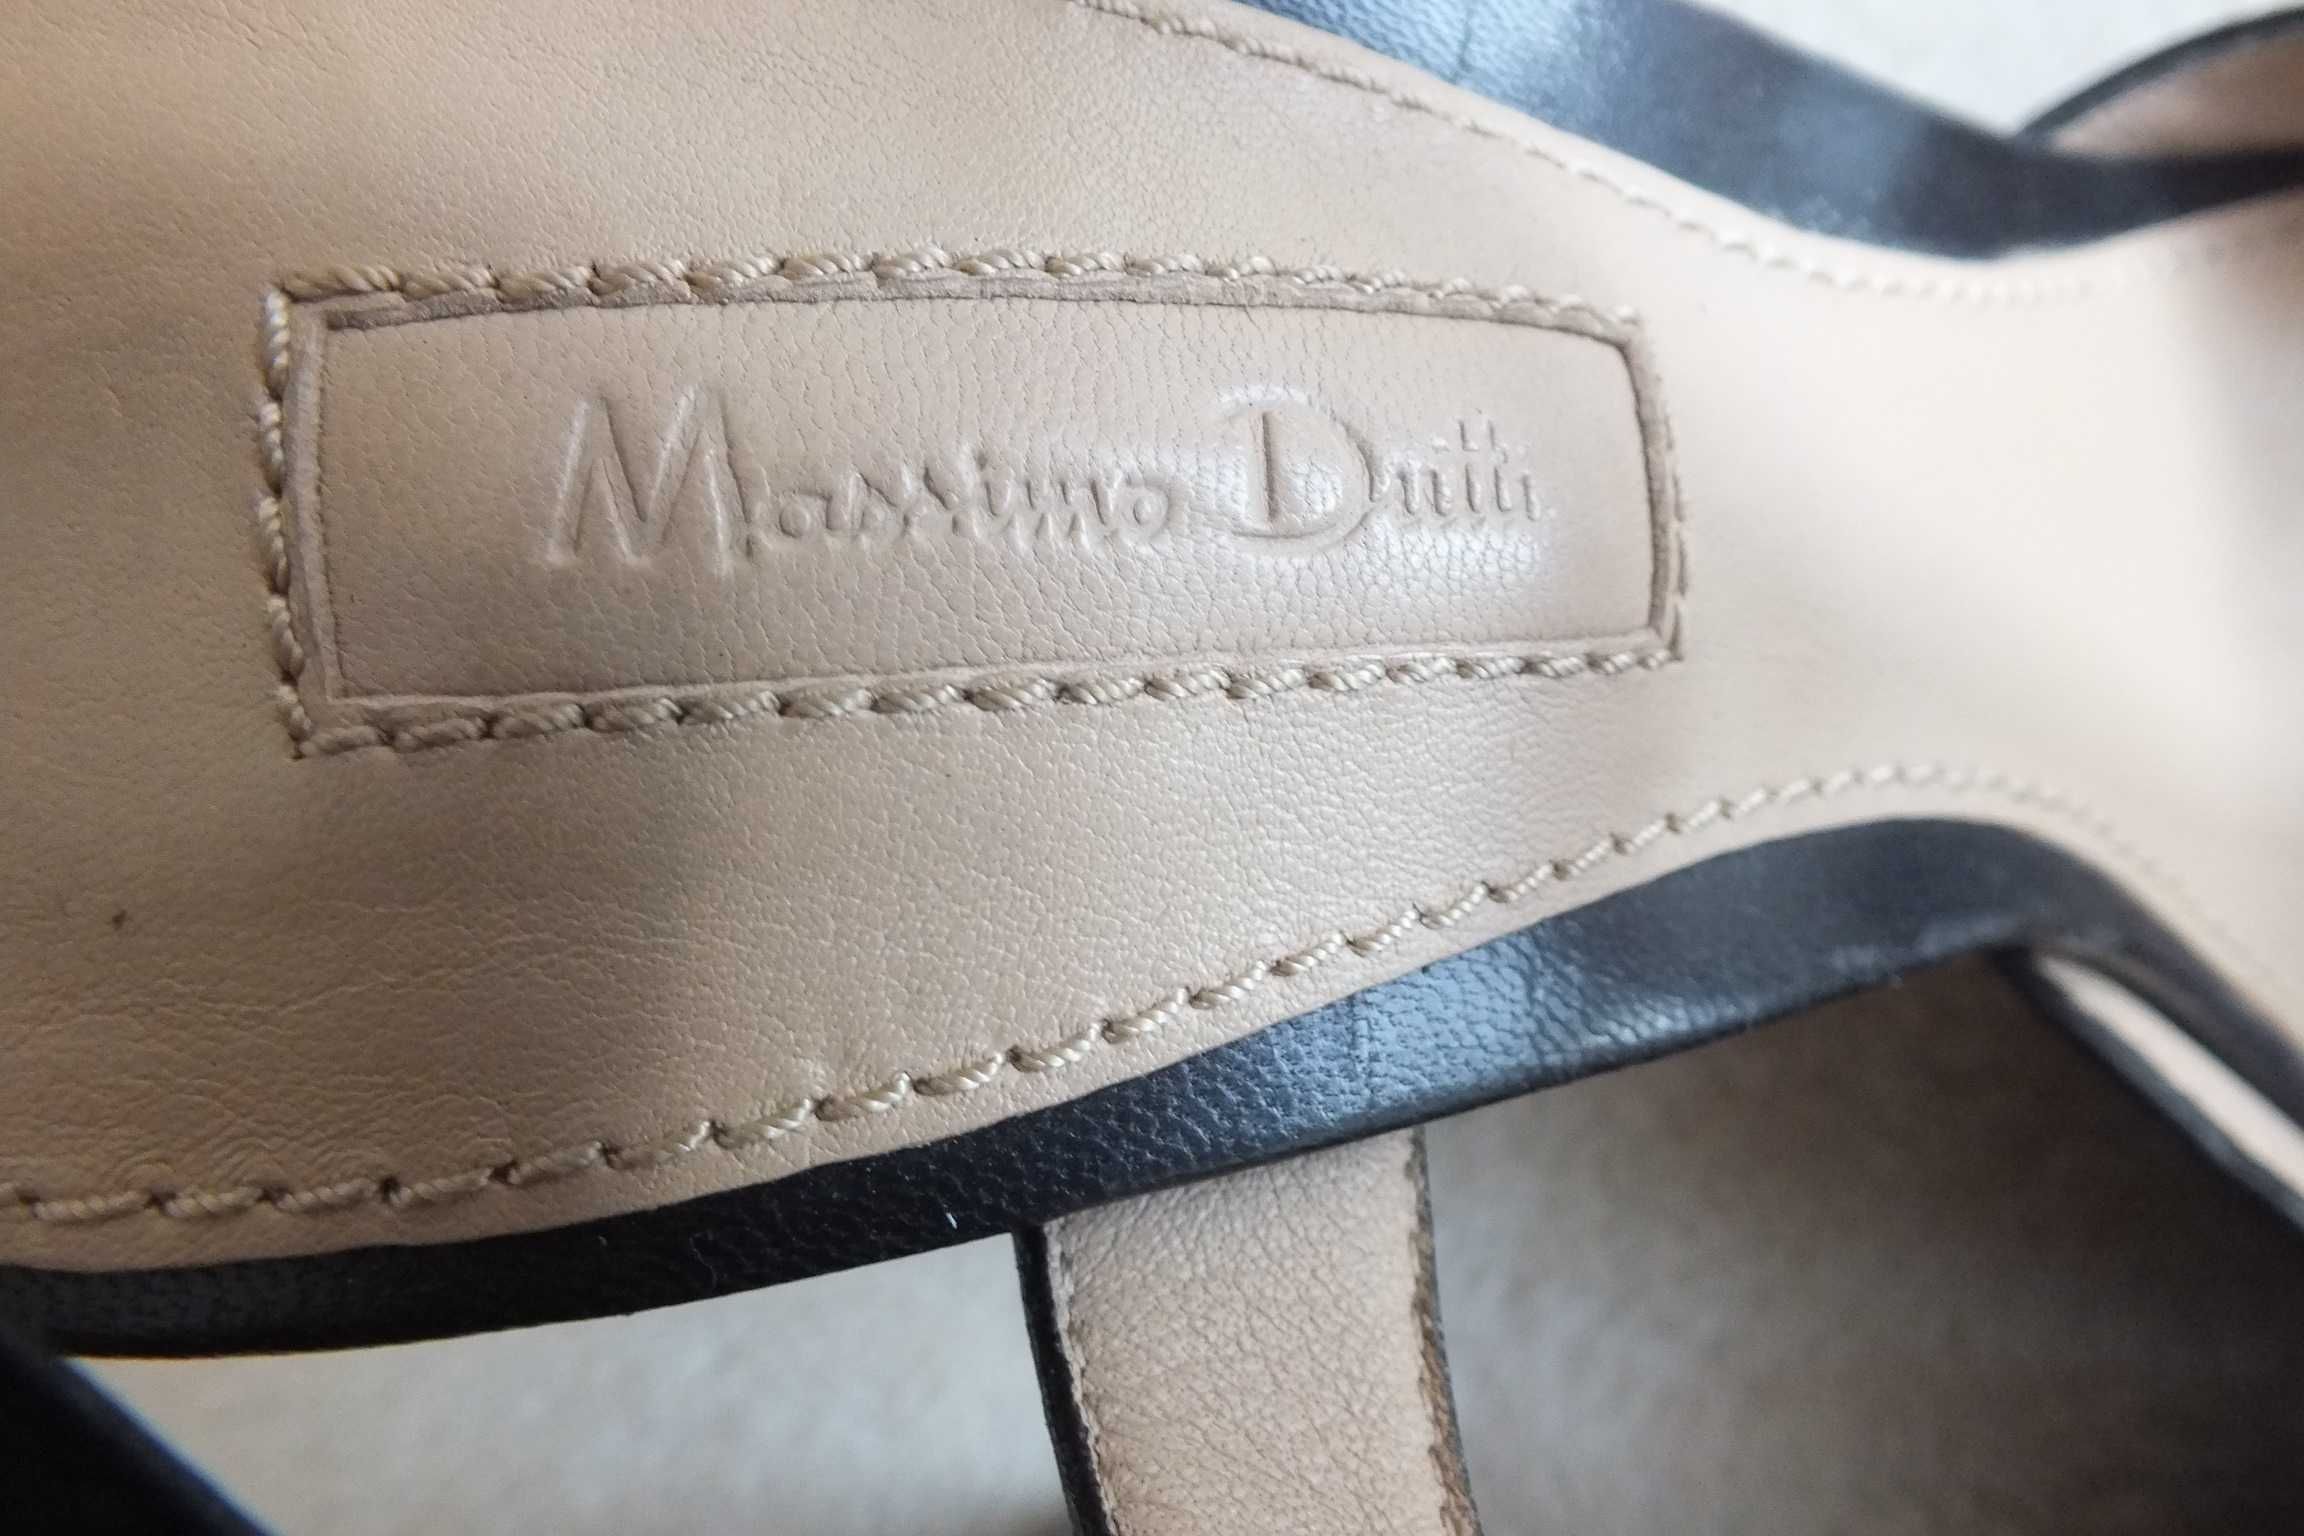 Massimo Dutti subtelne skórzane szpilki 38 obcas 12 cena z wysyłką